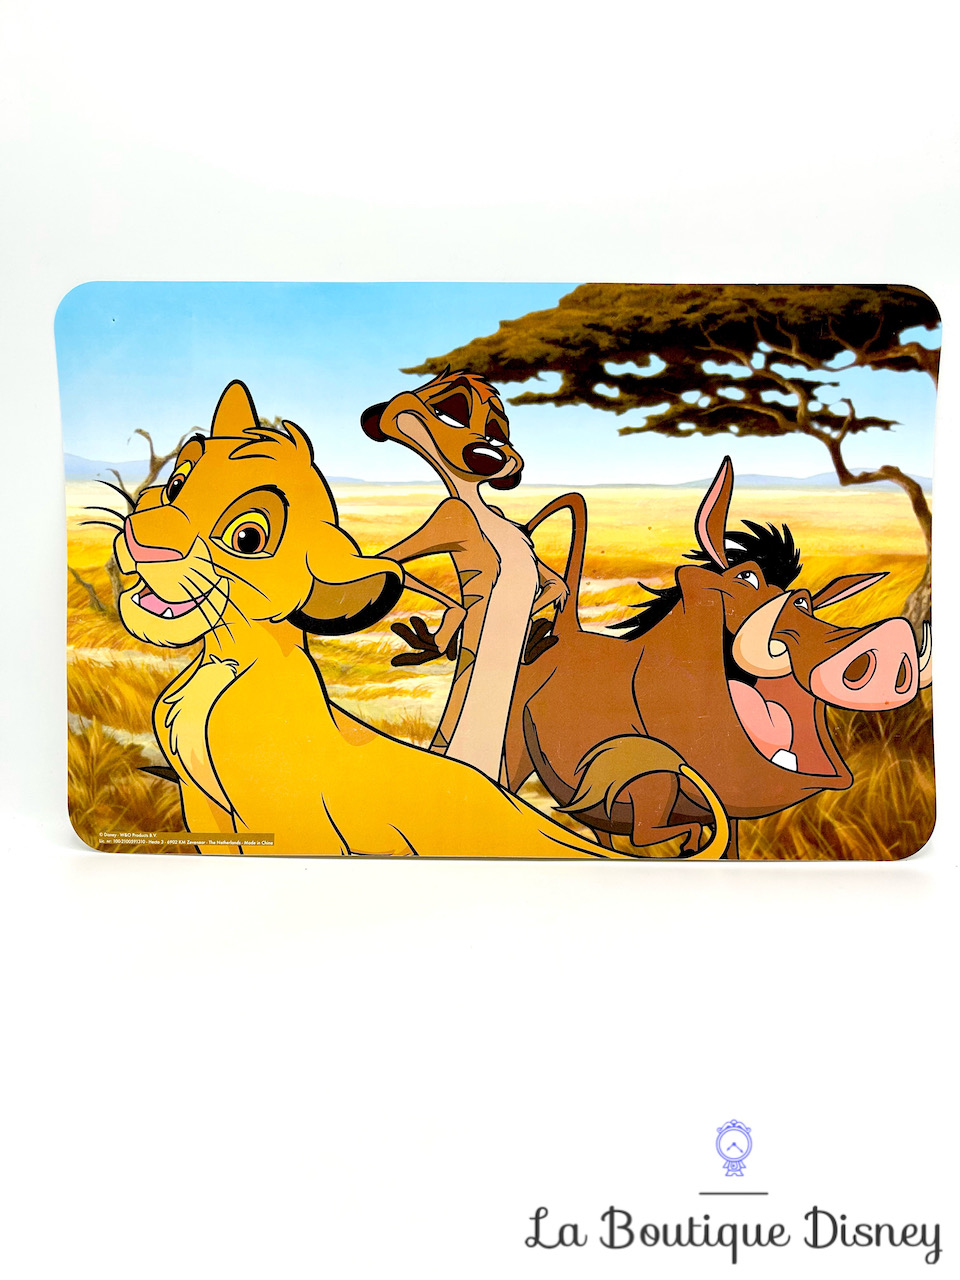 Set de table Simba Timon Pumbaa Disney W&O Products Le roi lion dessous table plastique